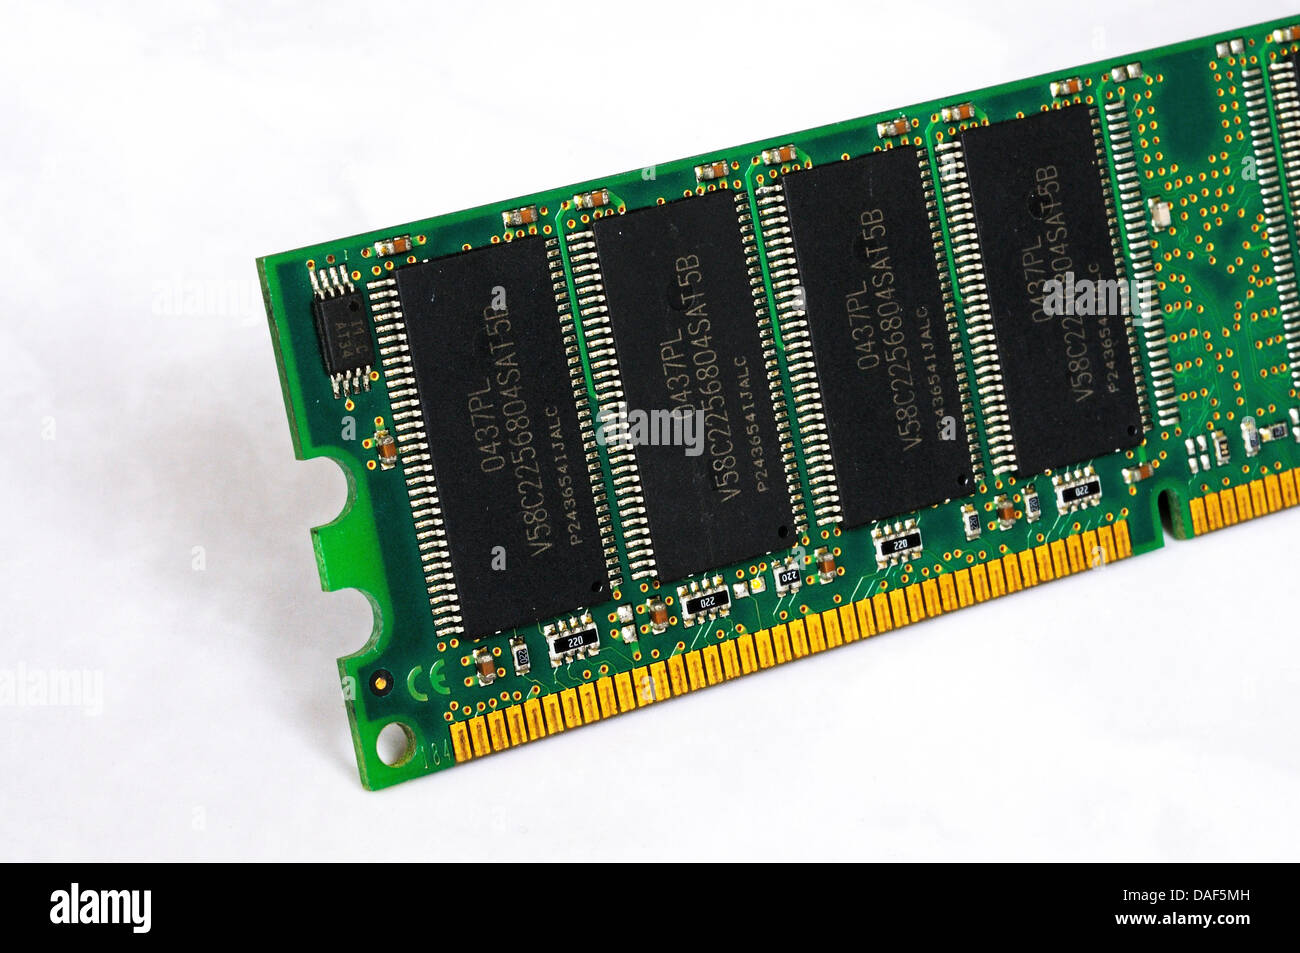 RAM DIMM, Dual Inline Memory Module, les circuits de la mémoire à accès aléatoire dynamique pour les PC, stations de travail et serveurs. Banque D'Images